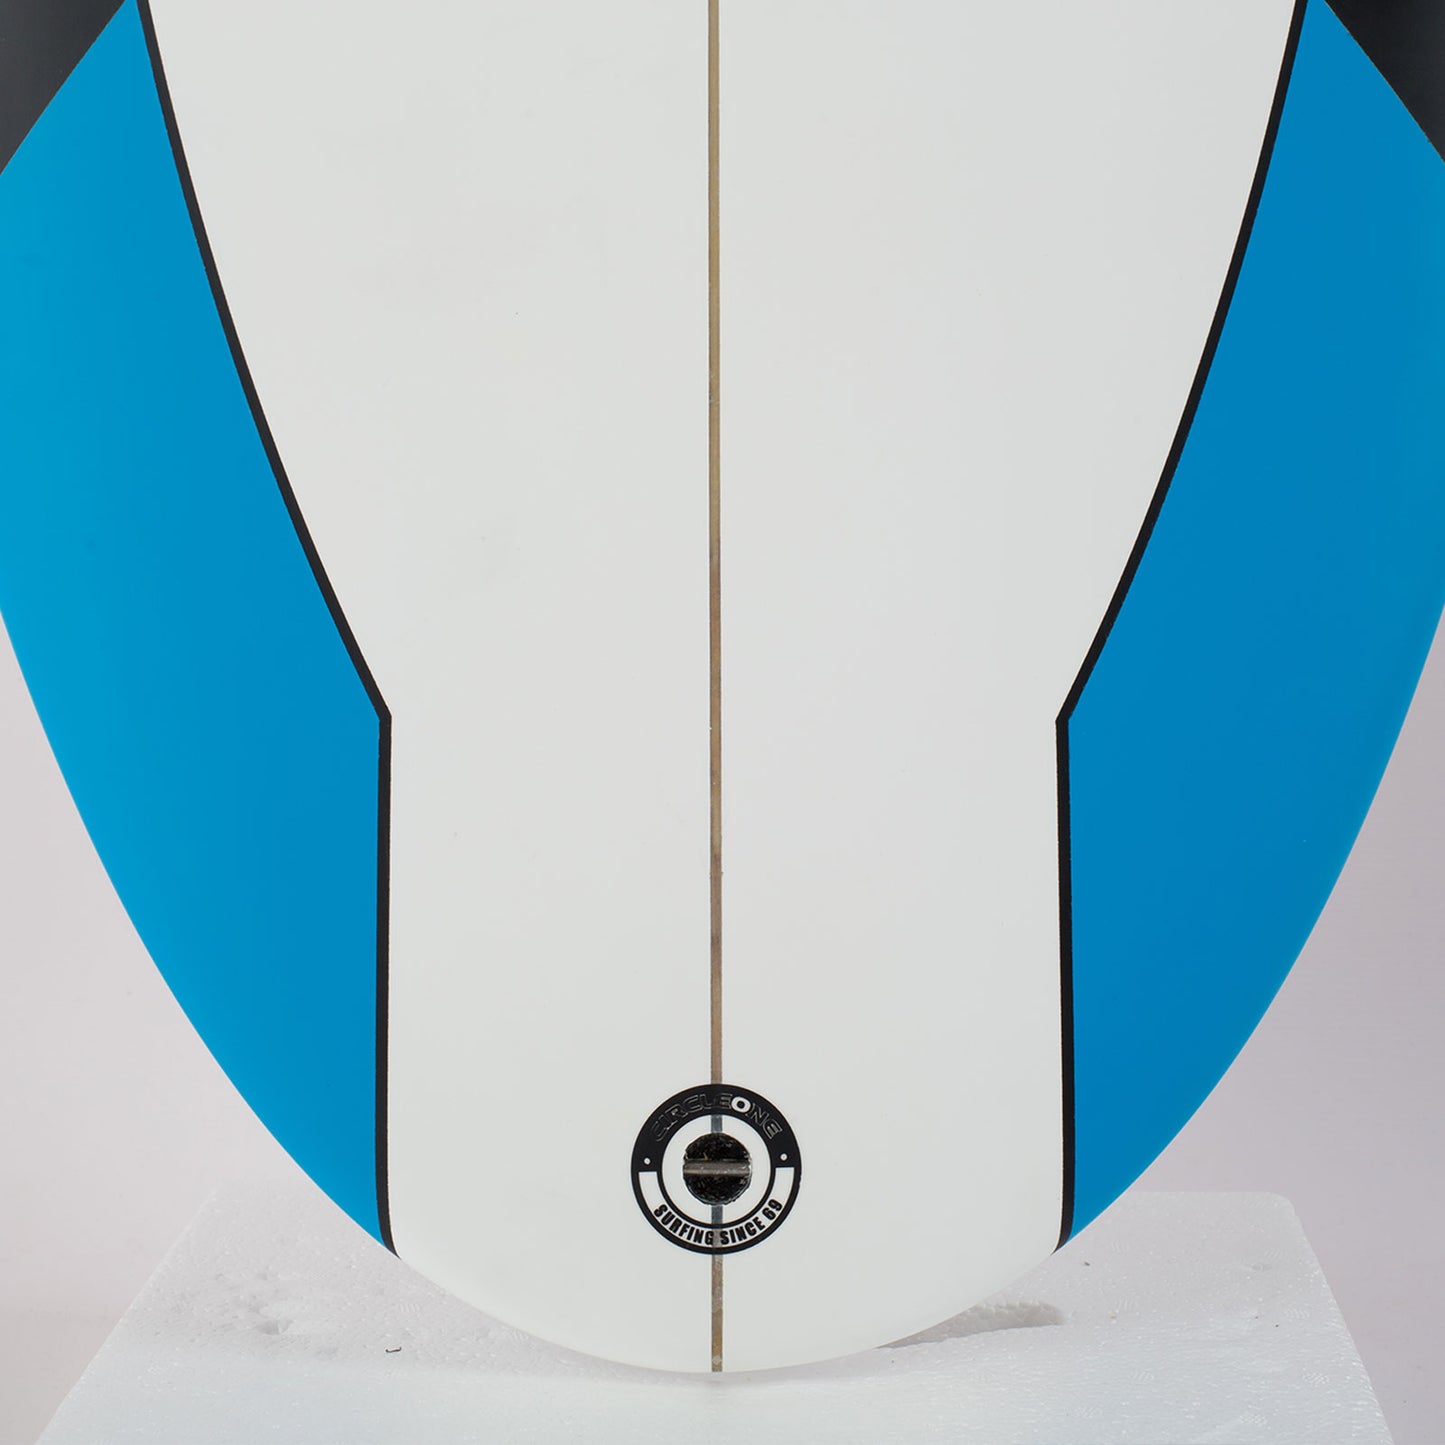 Mini Mal Surfboard – 7ft Razor Round Tail Mini Mal Surfboard – Matt Finish